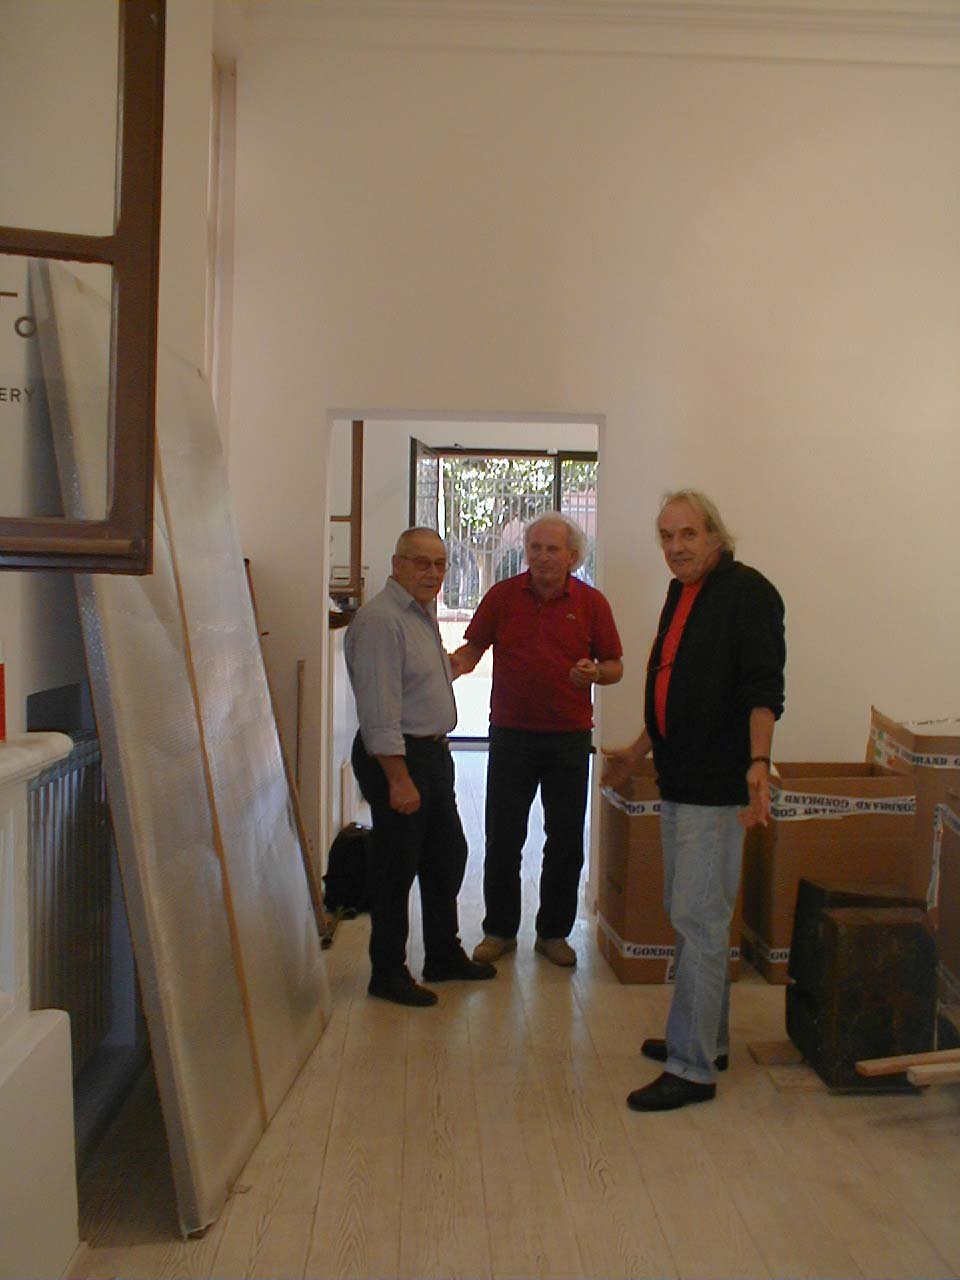 Gastini, Spagnulo e Mattiacci, durante l'allestimento della mostra Materica, presso Otto Gallery, 2003